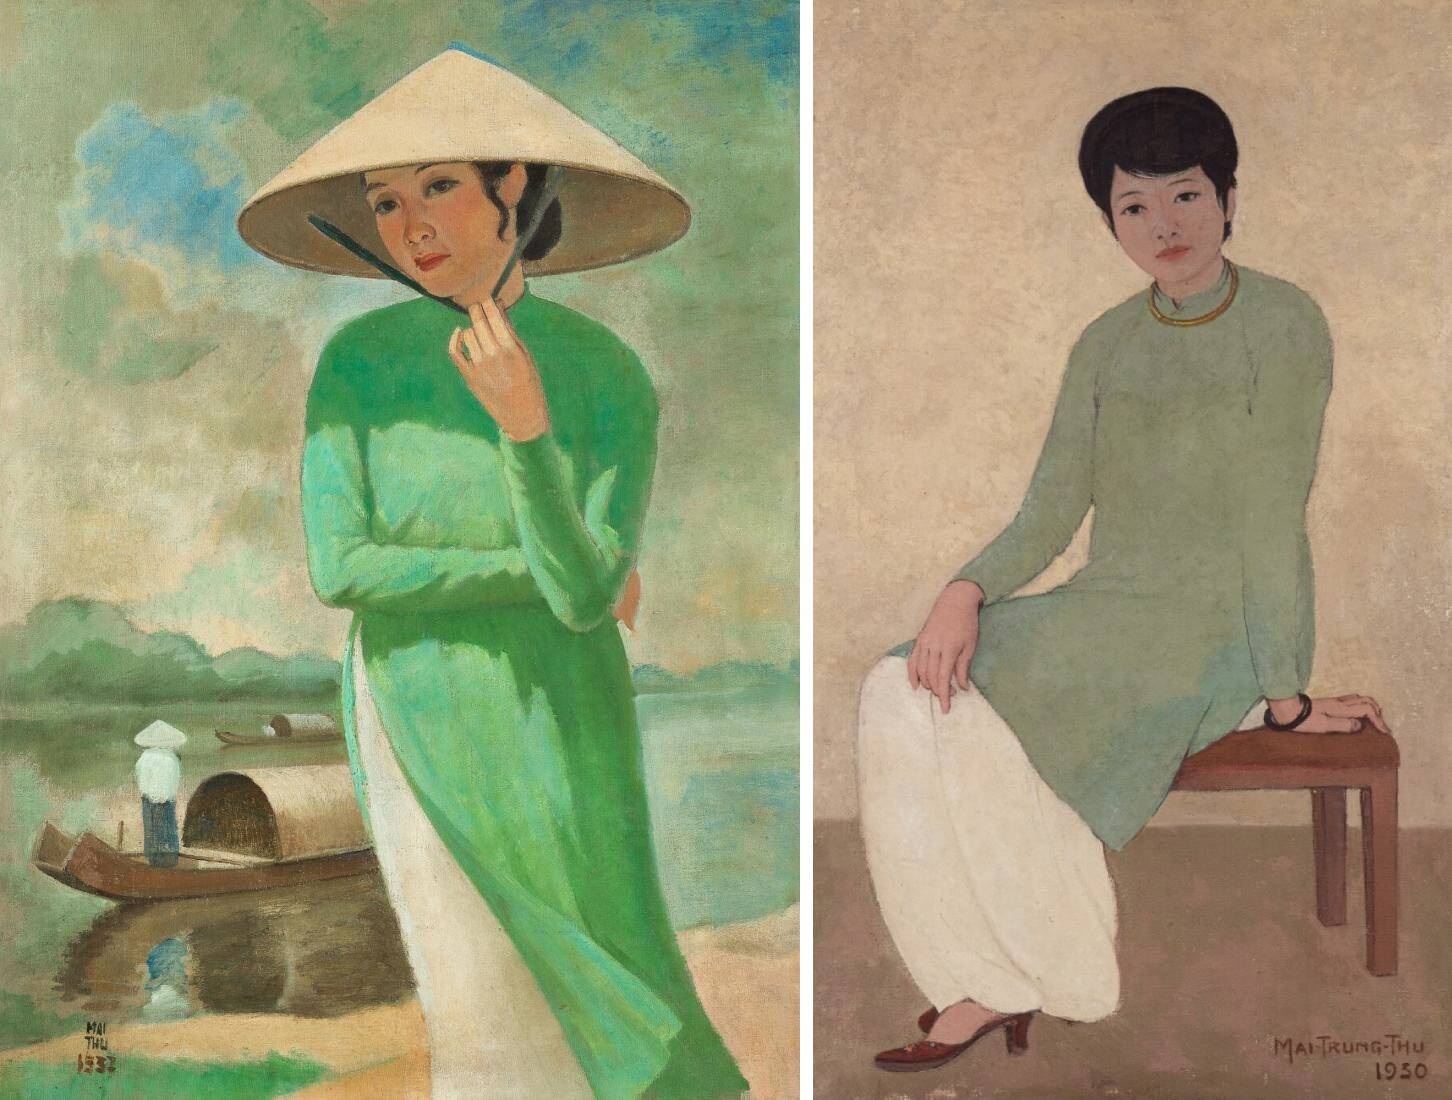 Hội họa: Hội họa là một trong những hình thức nghệ thuật đẹp nhất, đầy chất thơ và cảm xúc. Tranh vẽ giúp bạn bung tỏa tâm hồn, khám phá vẻ đẹp trong cuộc sống và tìm được sự thoả mãn và giải thoát, trong đó phản ánh được sự tinh tế và uyển chuyển nhất của văn hóa Việt Nam.